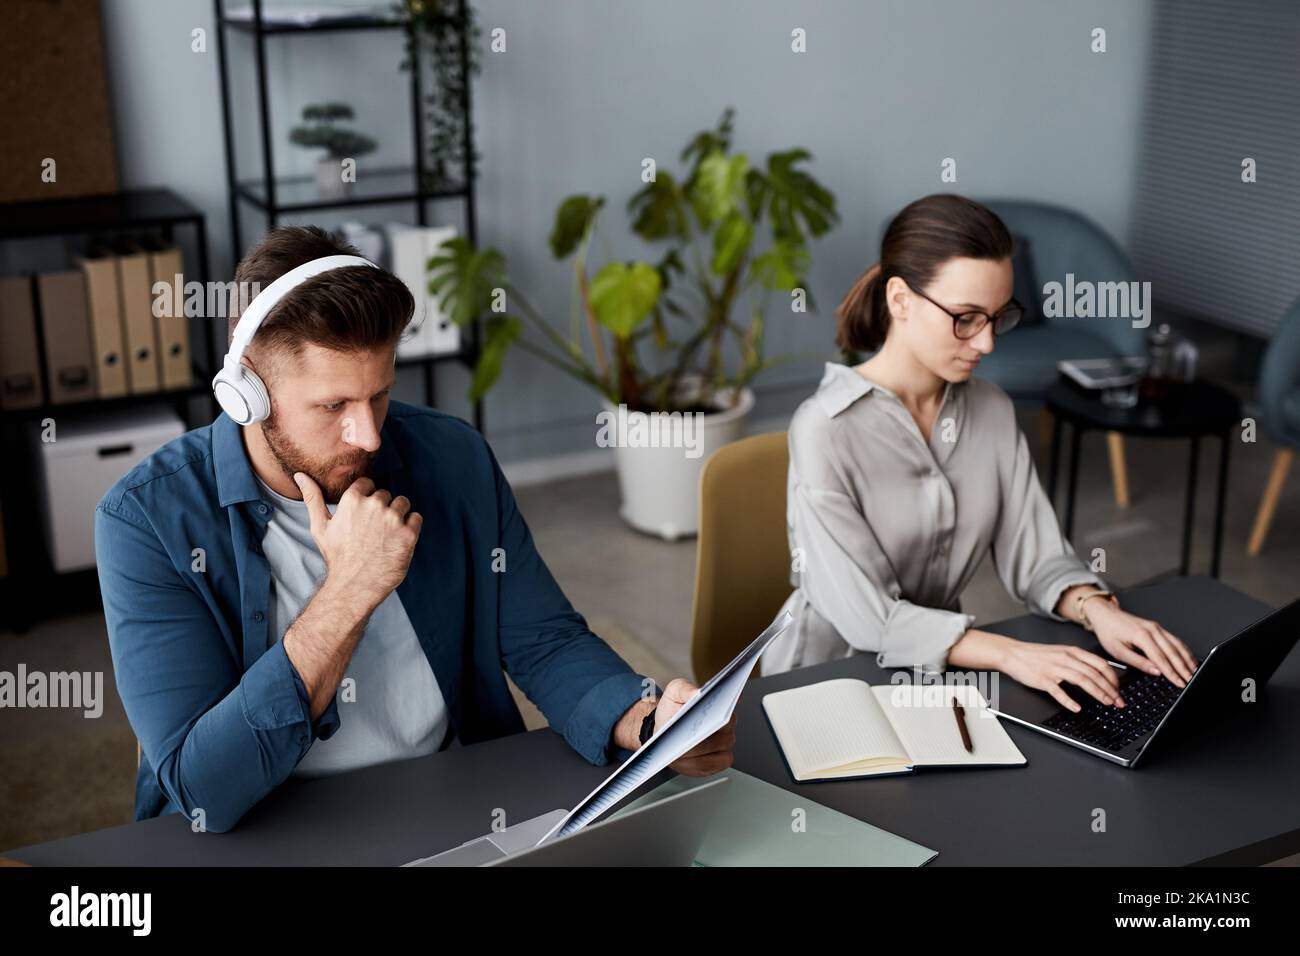 Ein junger seriöser Geschäftsmann mit Kopfhörern, der Dokumente durchschaut, während sein Kollege vor dem Laptop sitzt und tippt Stockfoto